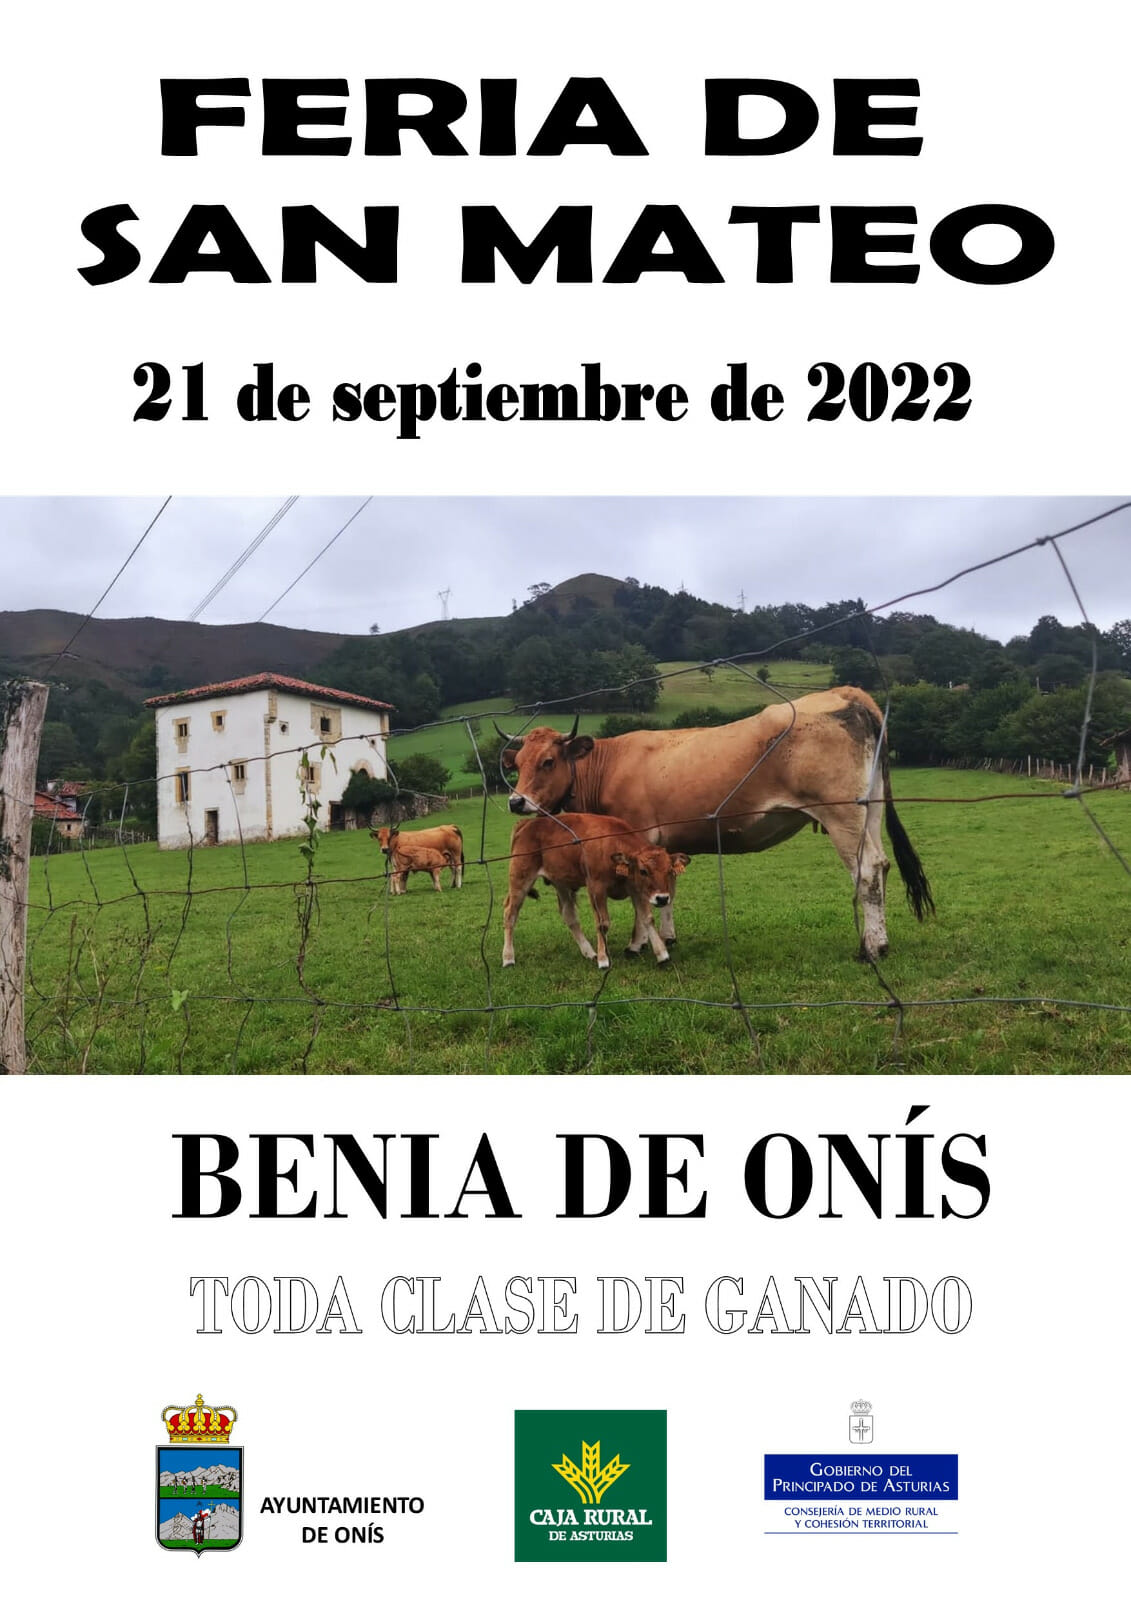 Cartel Feria de San Mateo 2022 benia de onis